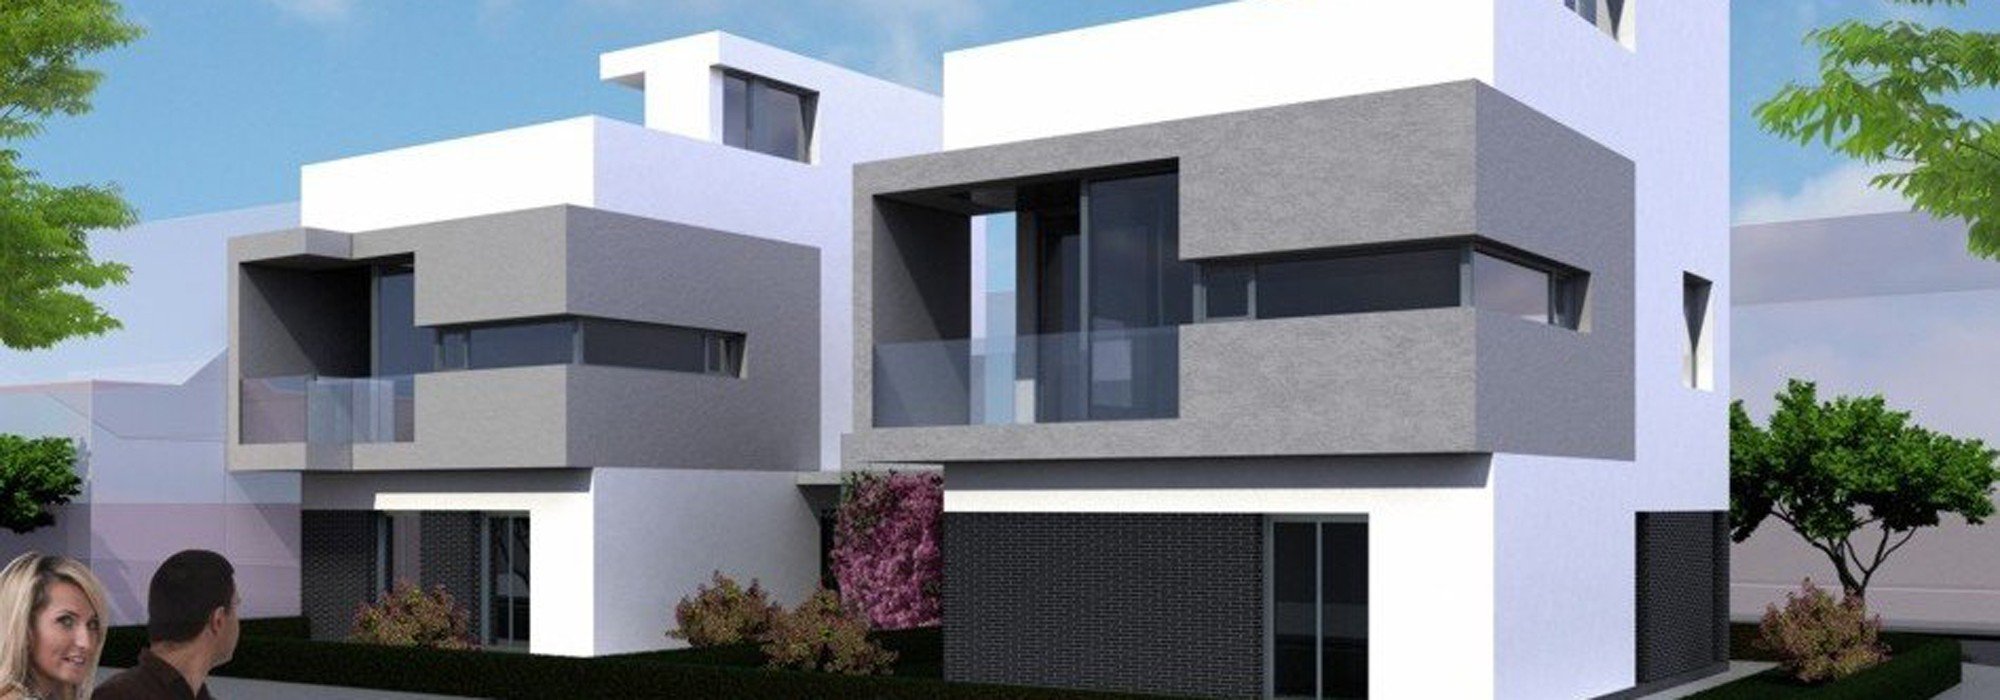 2 viviendas adosadas. BN2 :: RESIDENCIAL :: NUÑO ARQUITECTURA  Arquitectura sostenible diseñada para tí